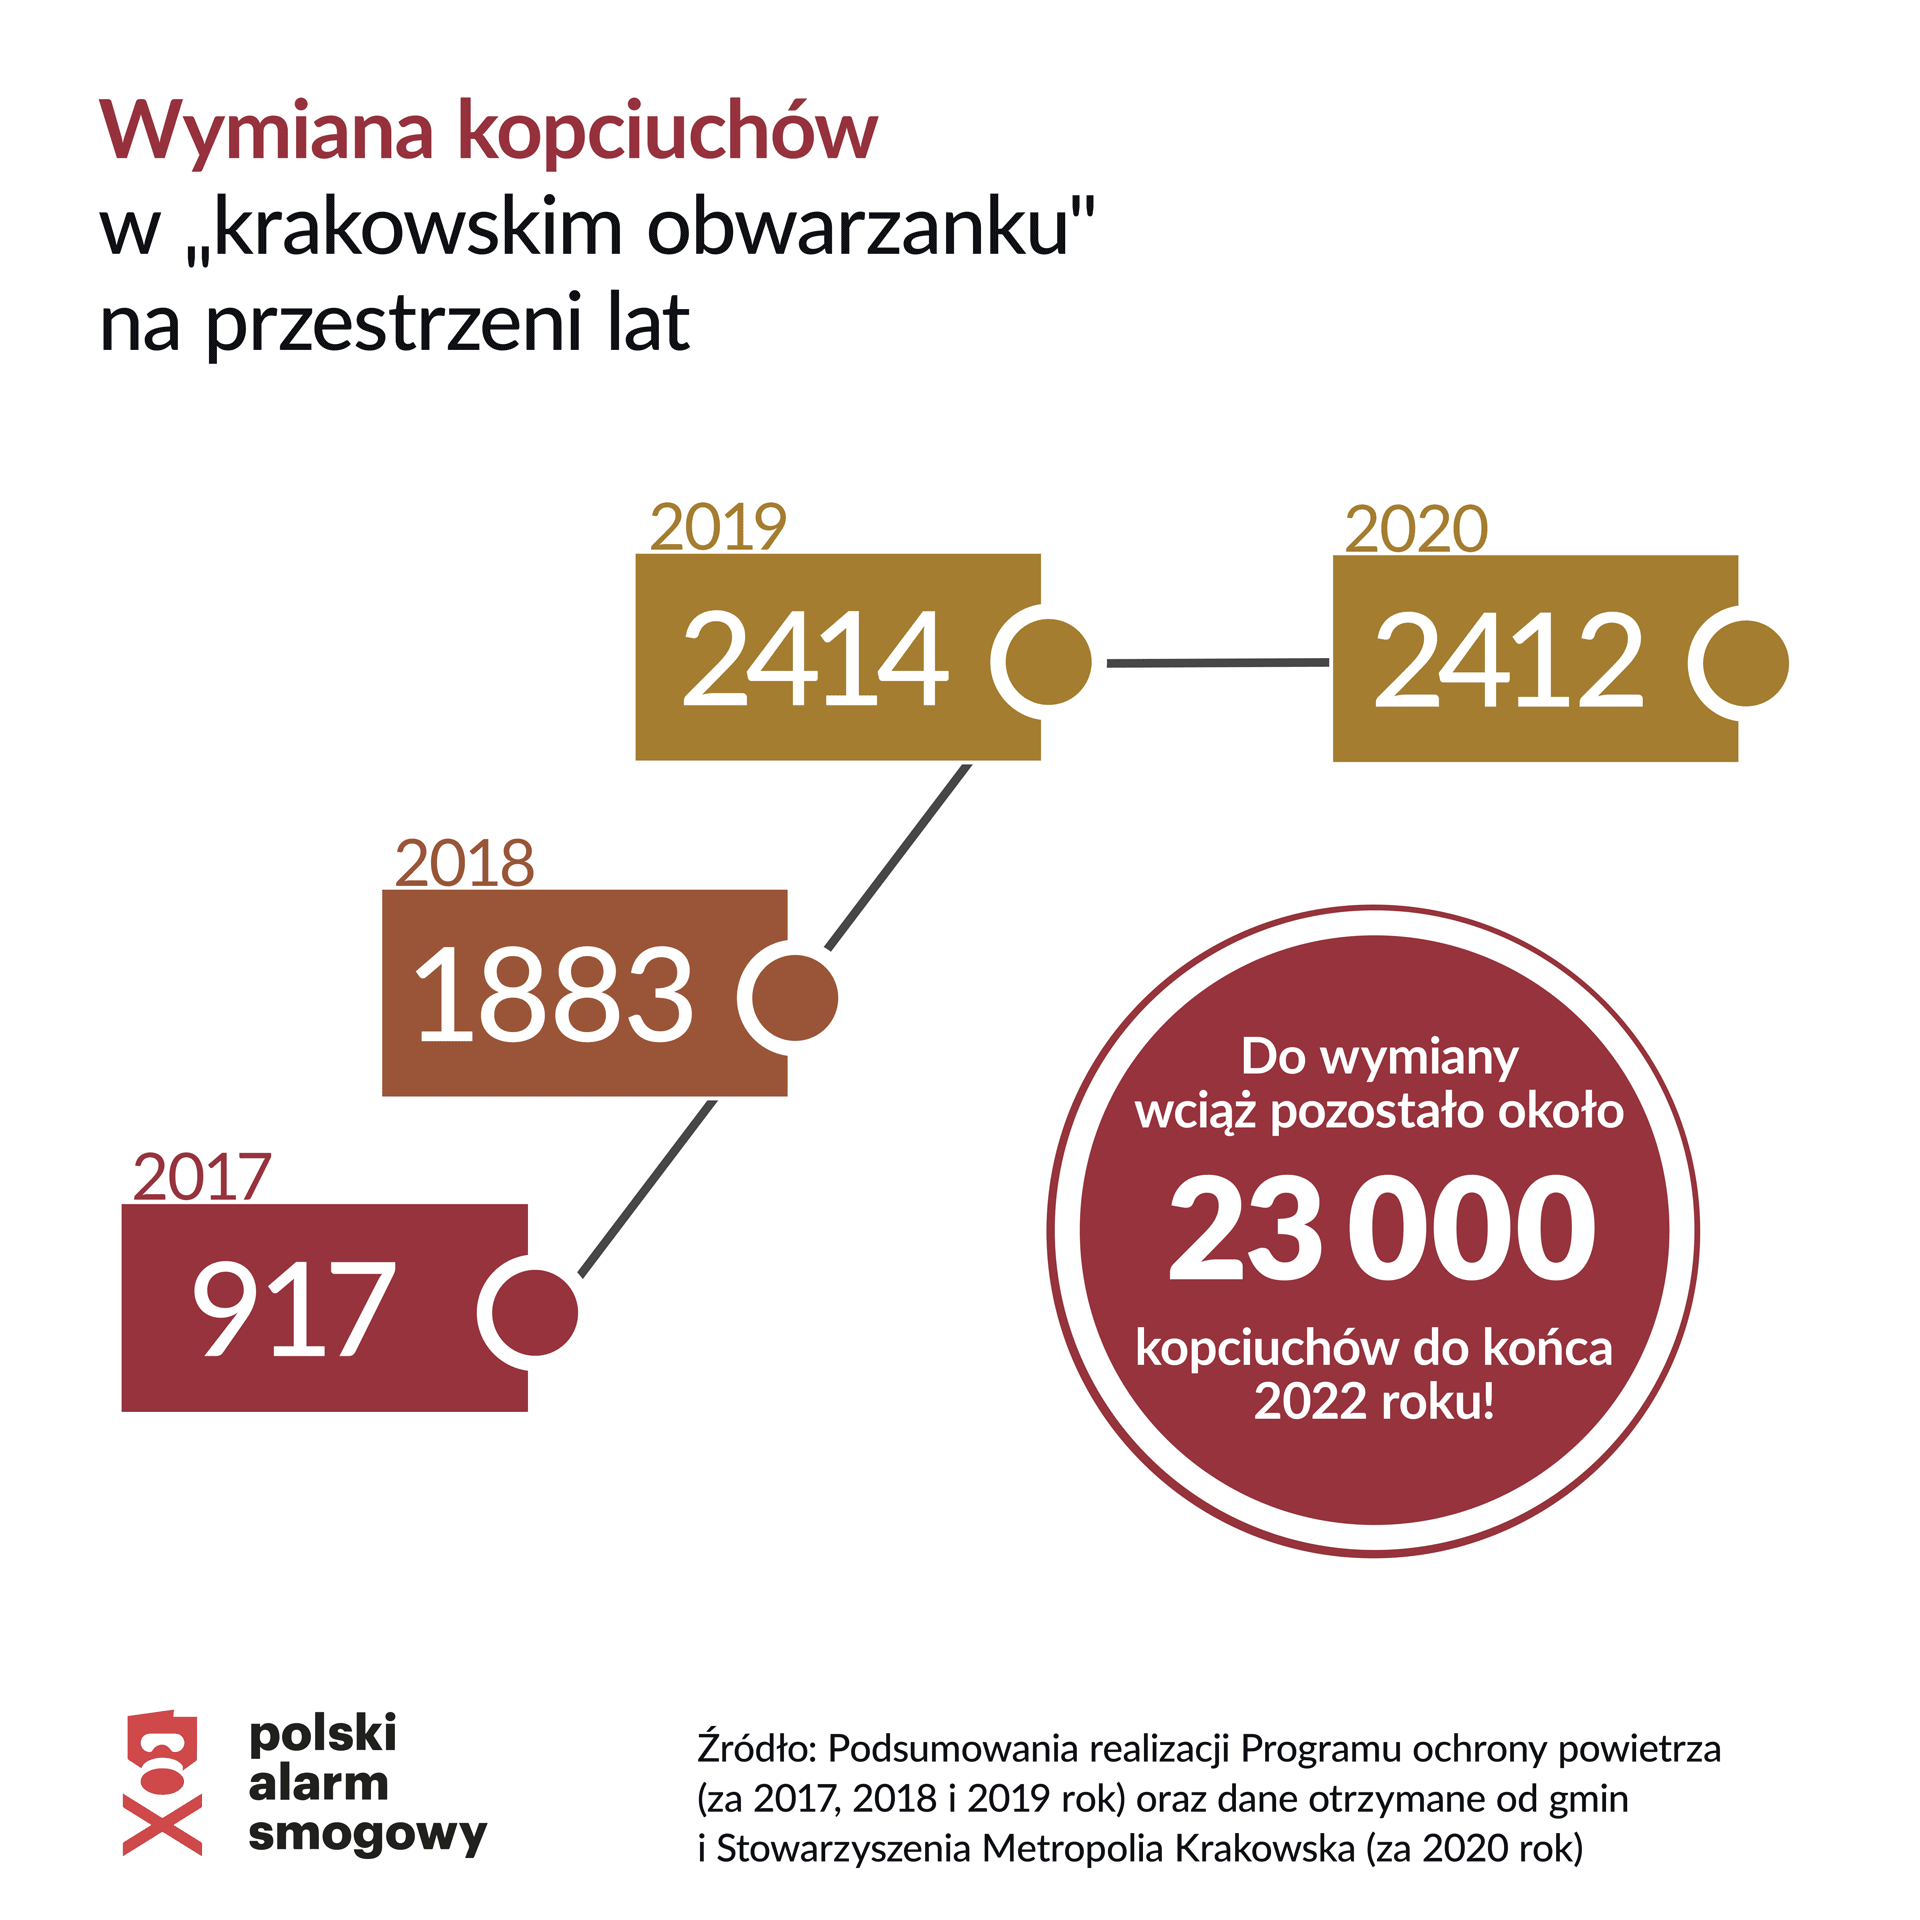 Wymiana kopciuchów w krakowskim obwarzanku na przestrzeni lat